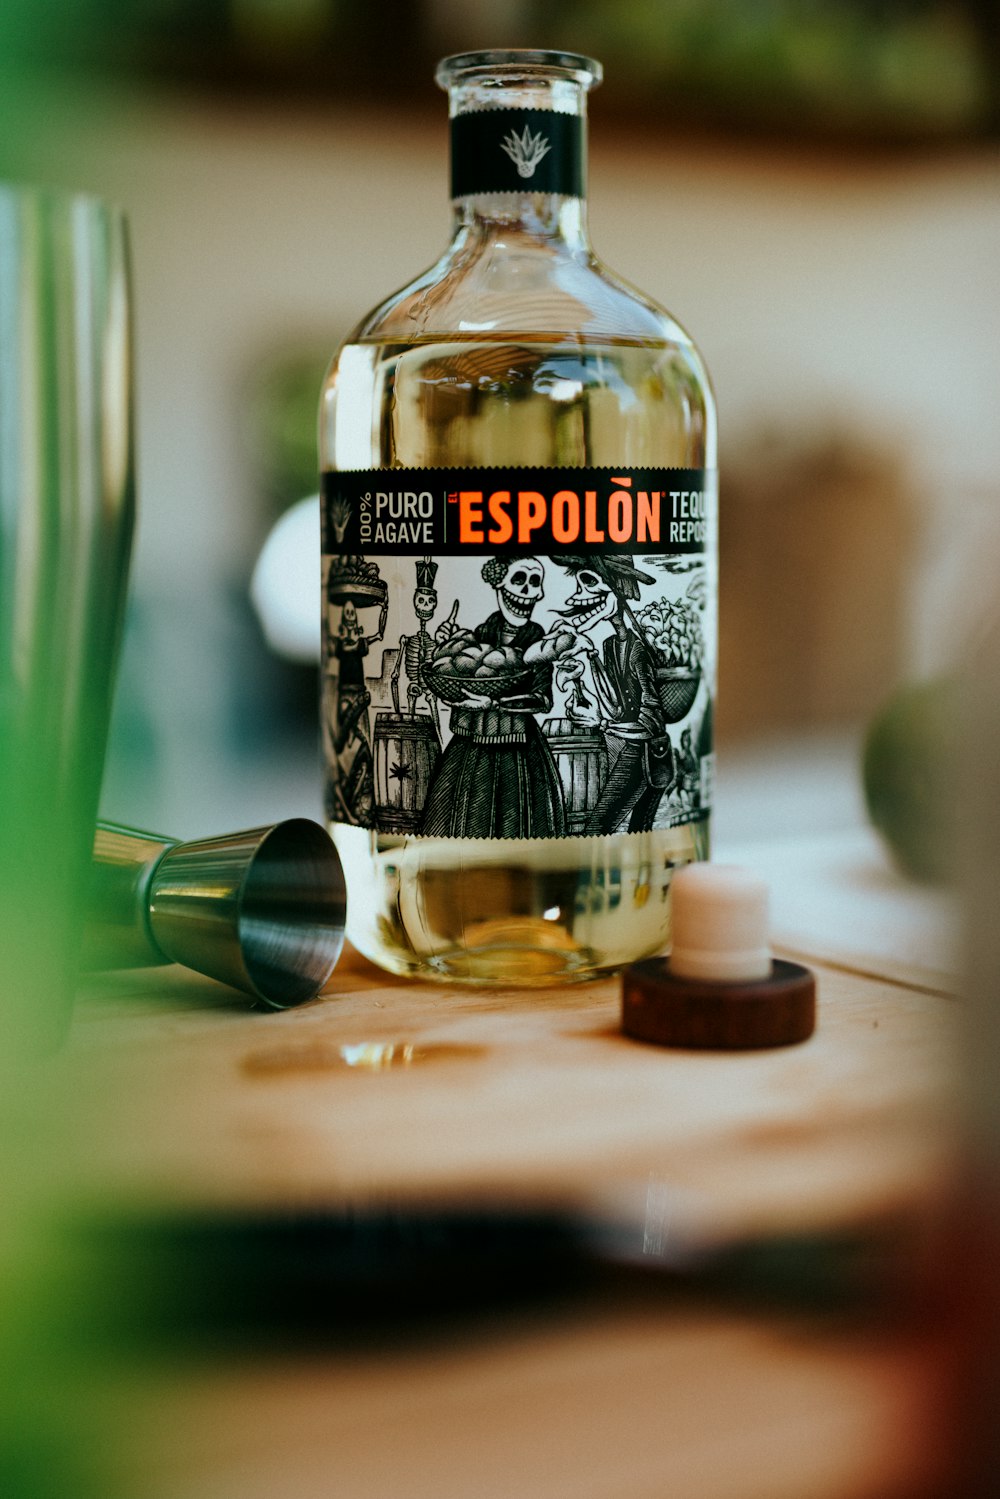 Espolòn Tequila labeled bottle photo – Free Image on Unsplash